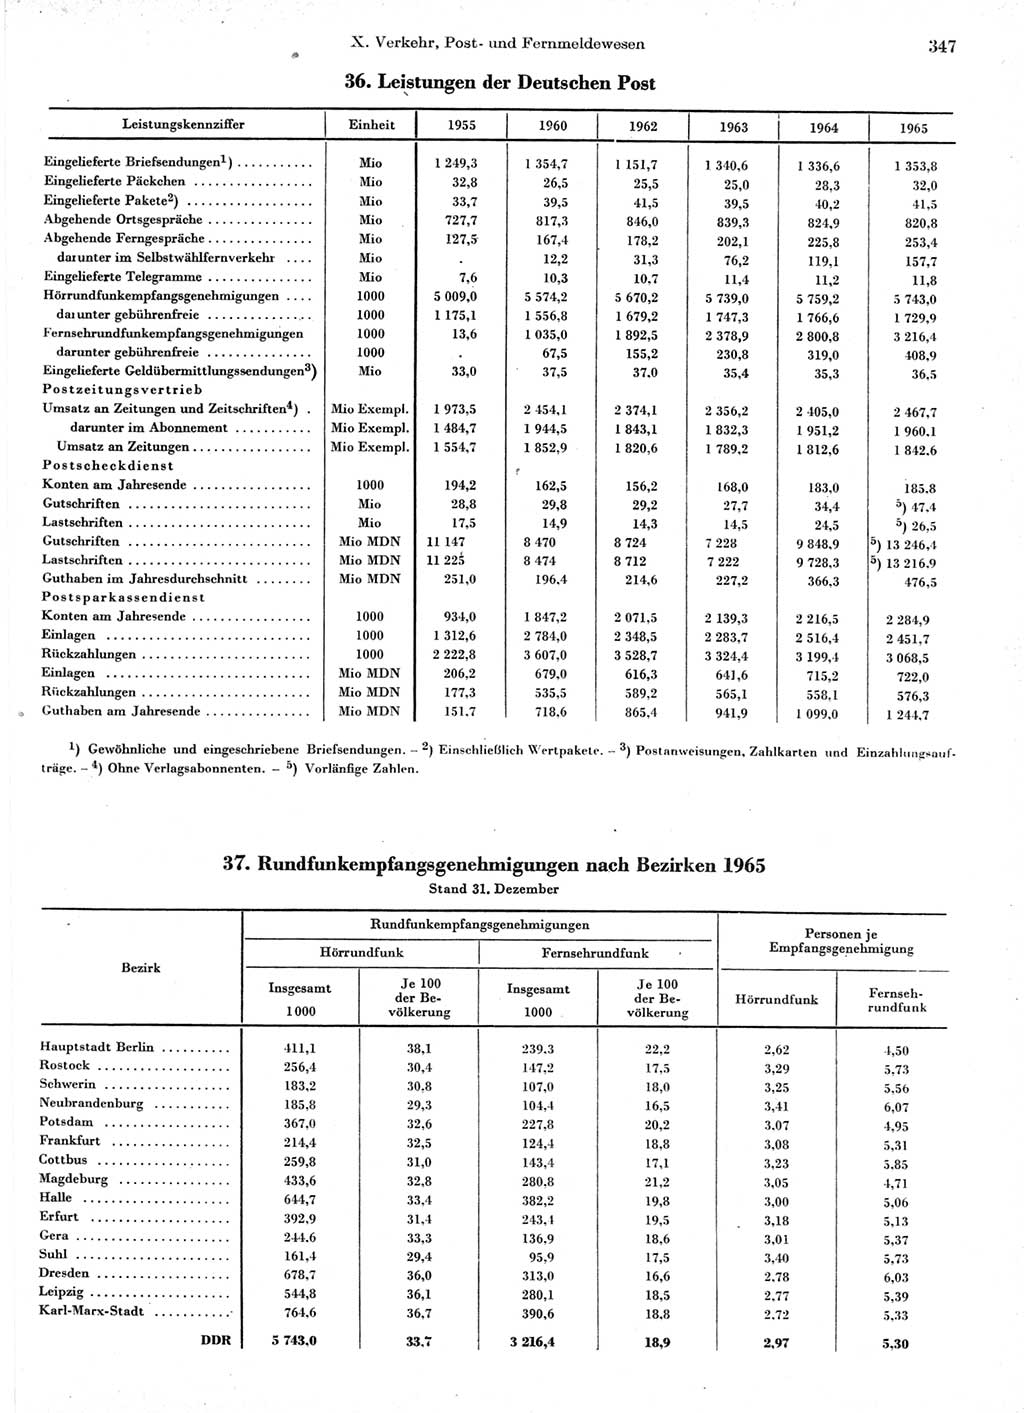 Statistisches Jahrbuch der Deutschen Demokratischen Republik (DDR) 1966, Seite 347 (Stat. Jb. DDR 1966, S. 347)